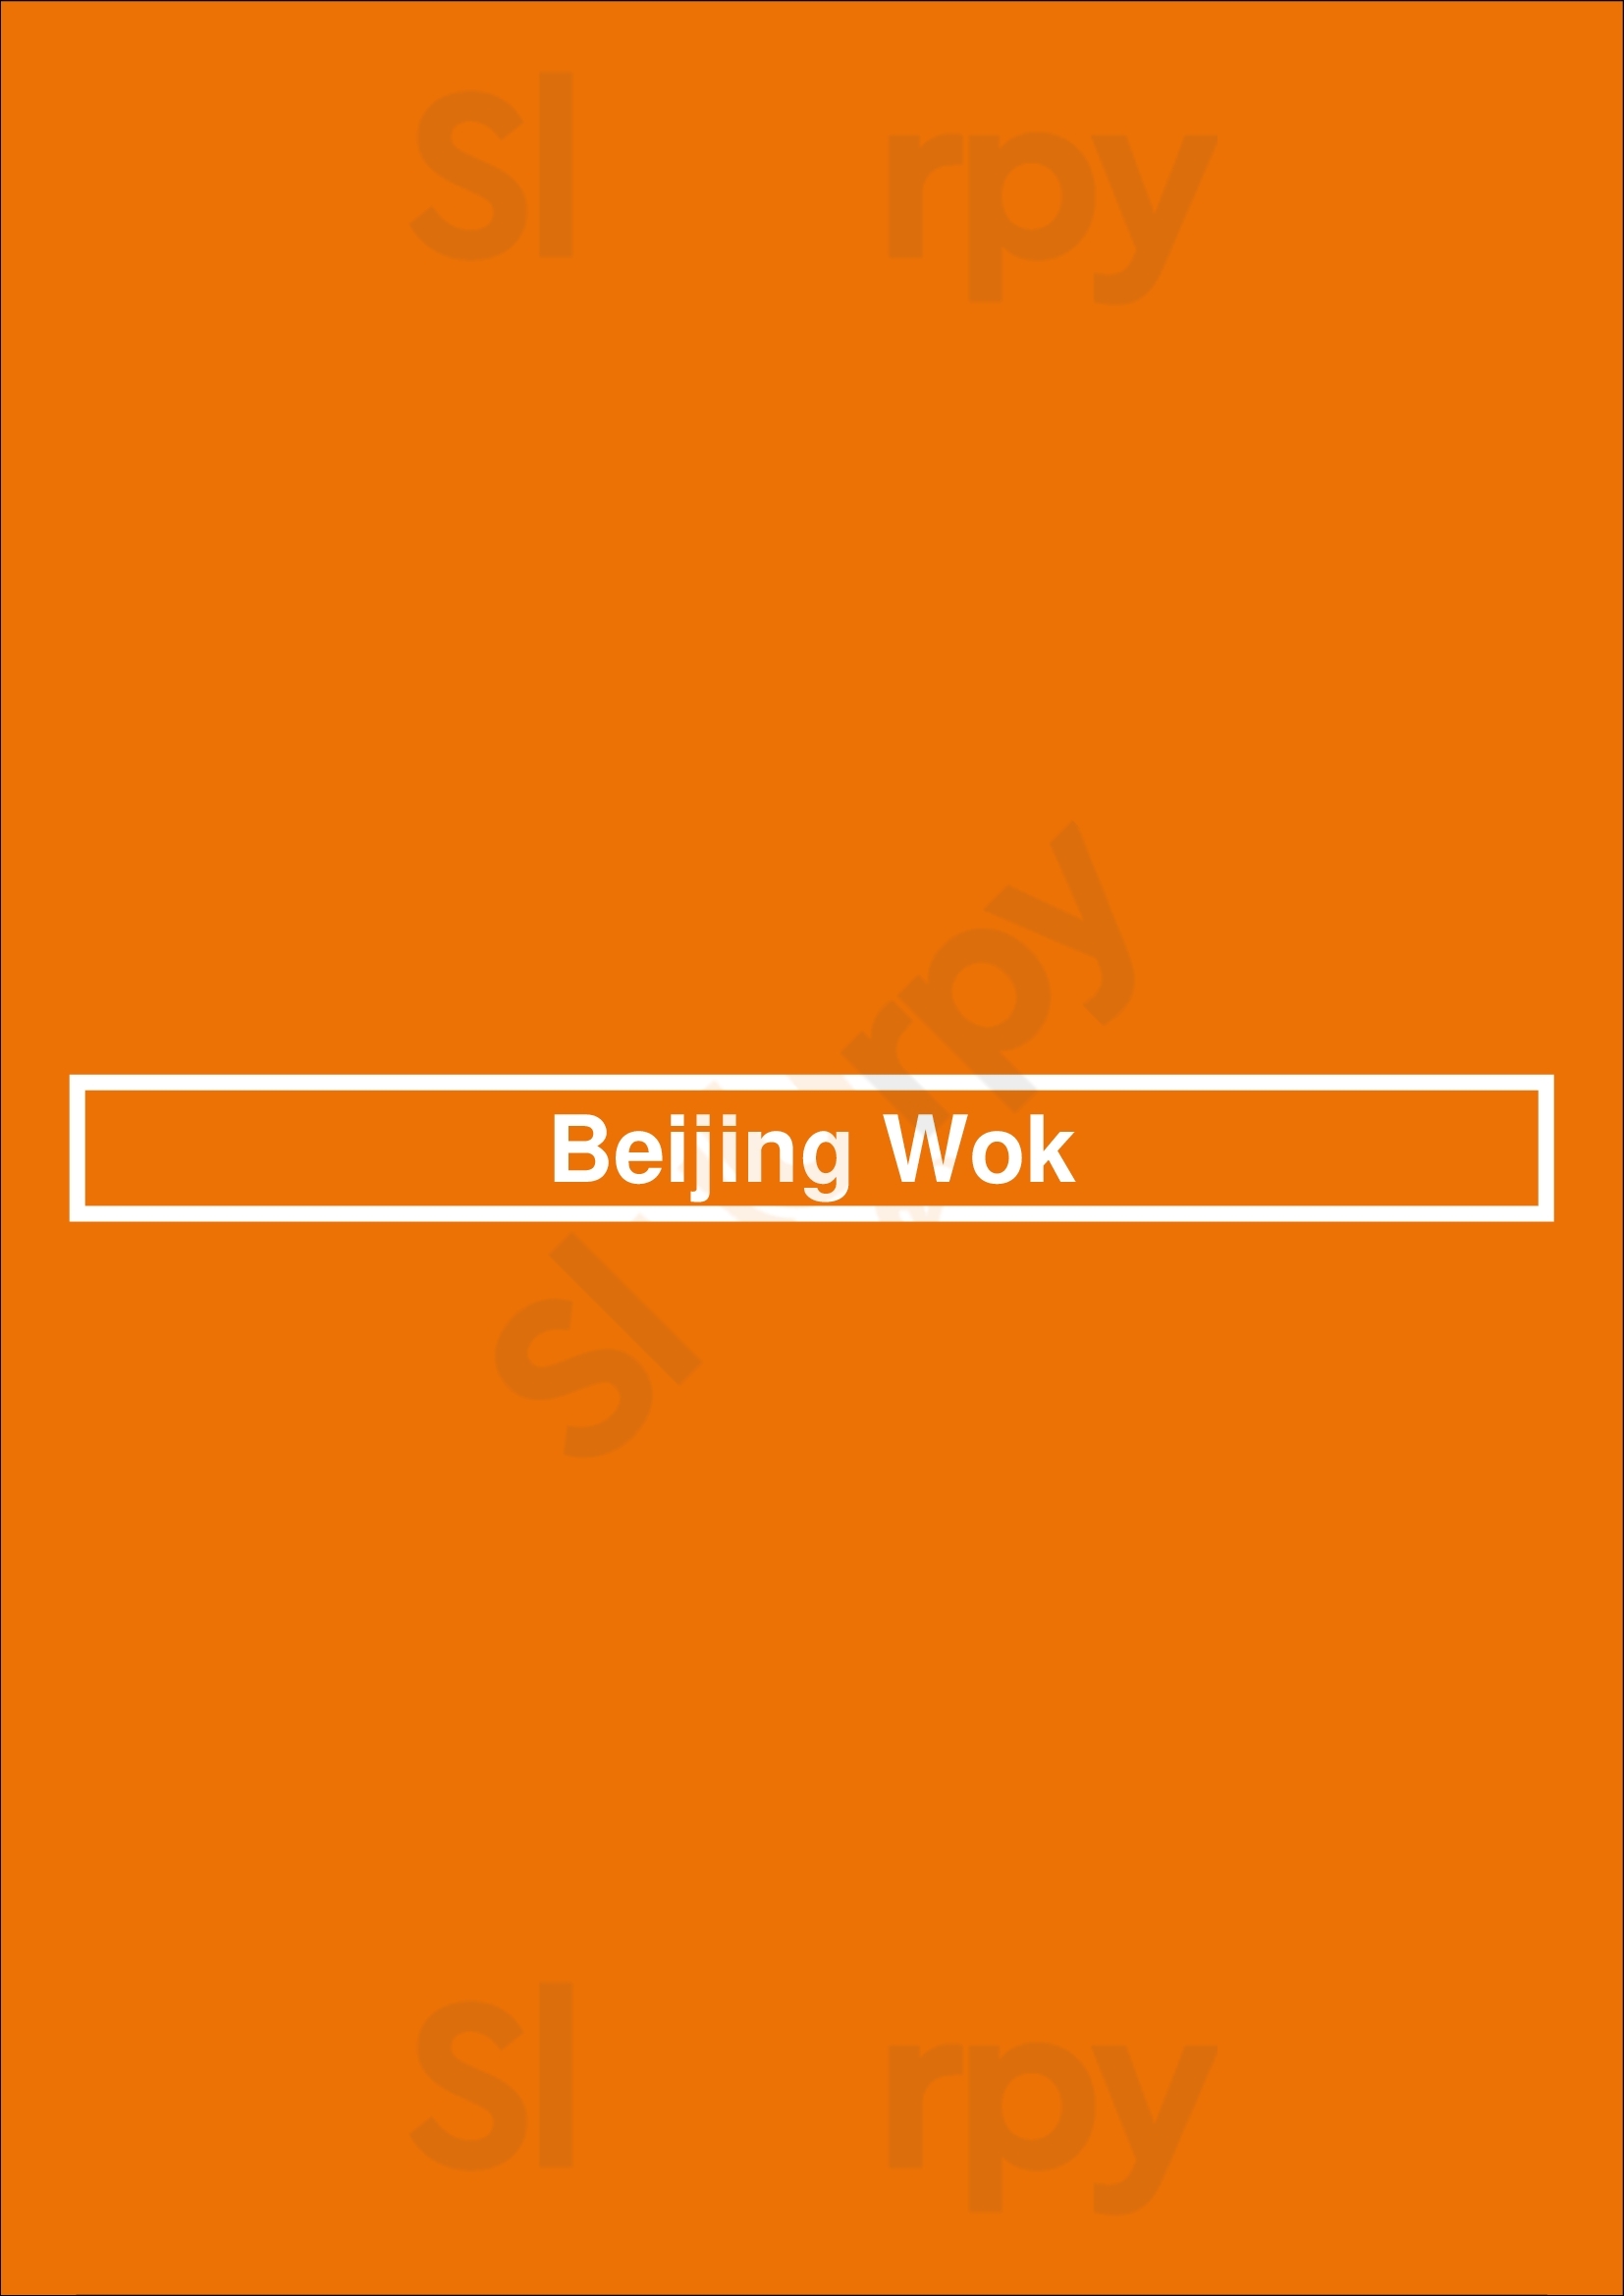 Beijing Wok Pasadena Menu - 1